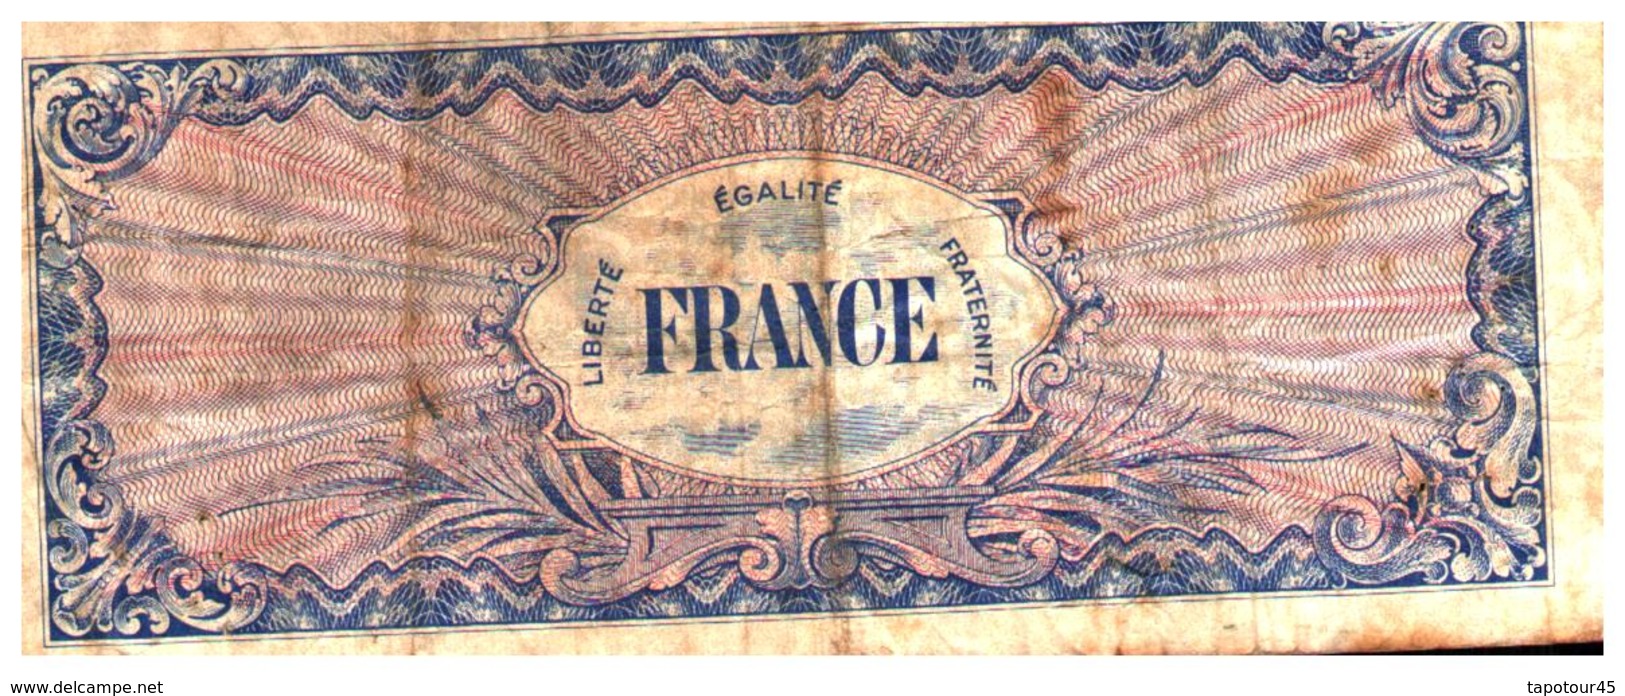 Billets > France > 100 Francs 1944 - 1945 Verso France